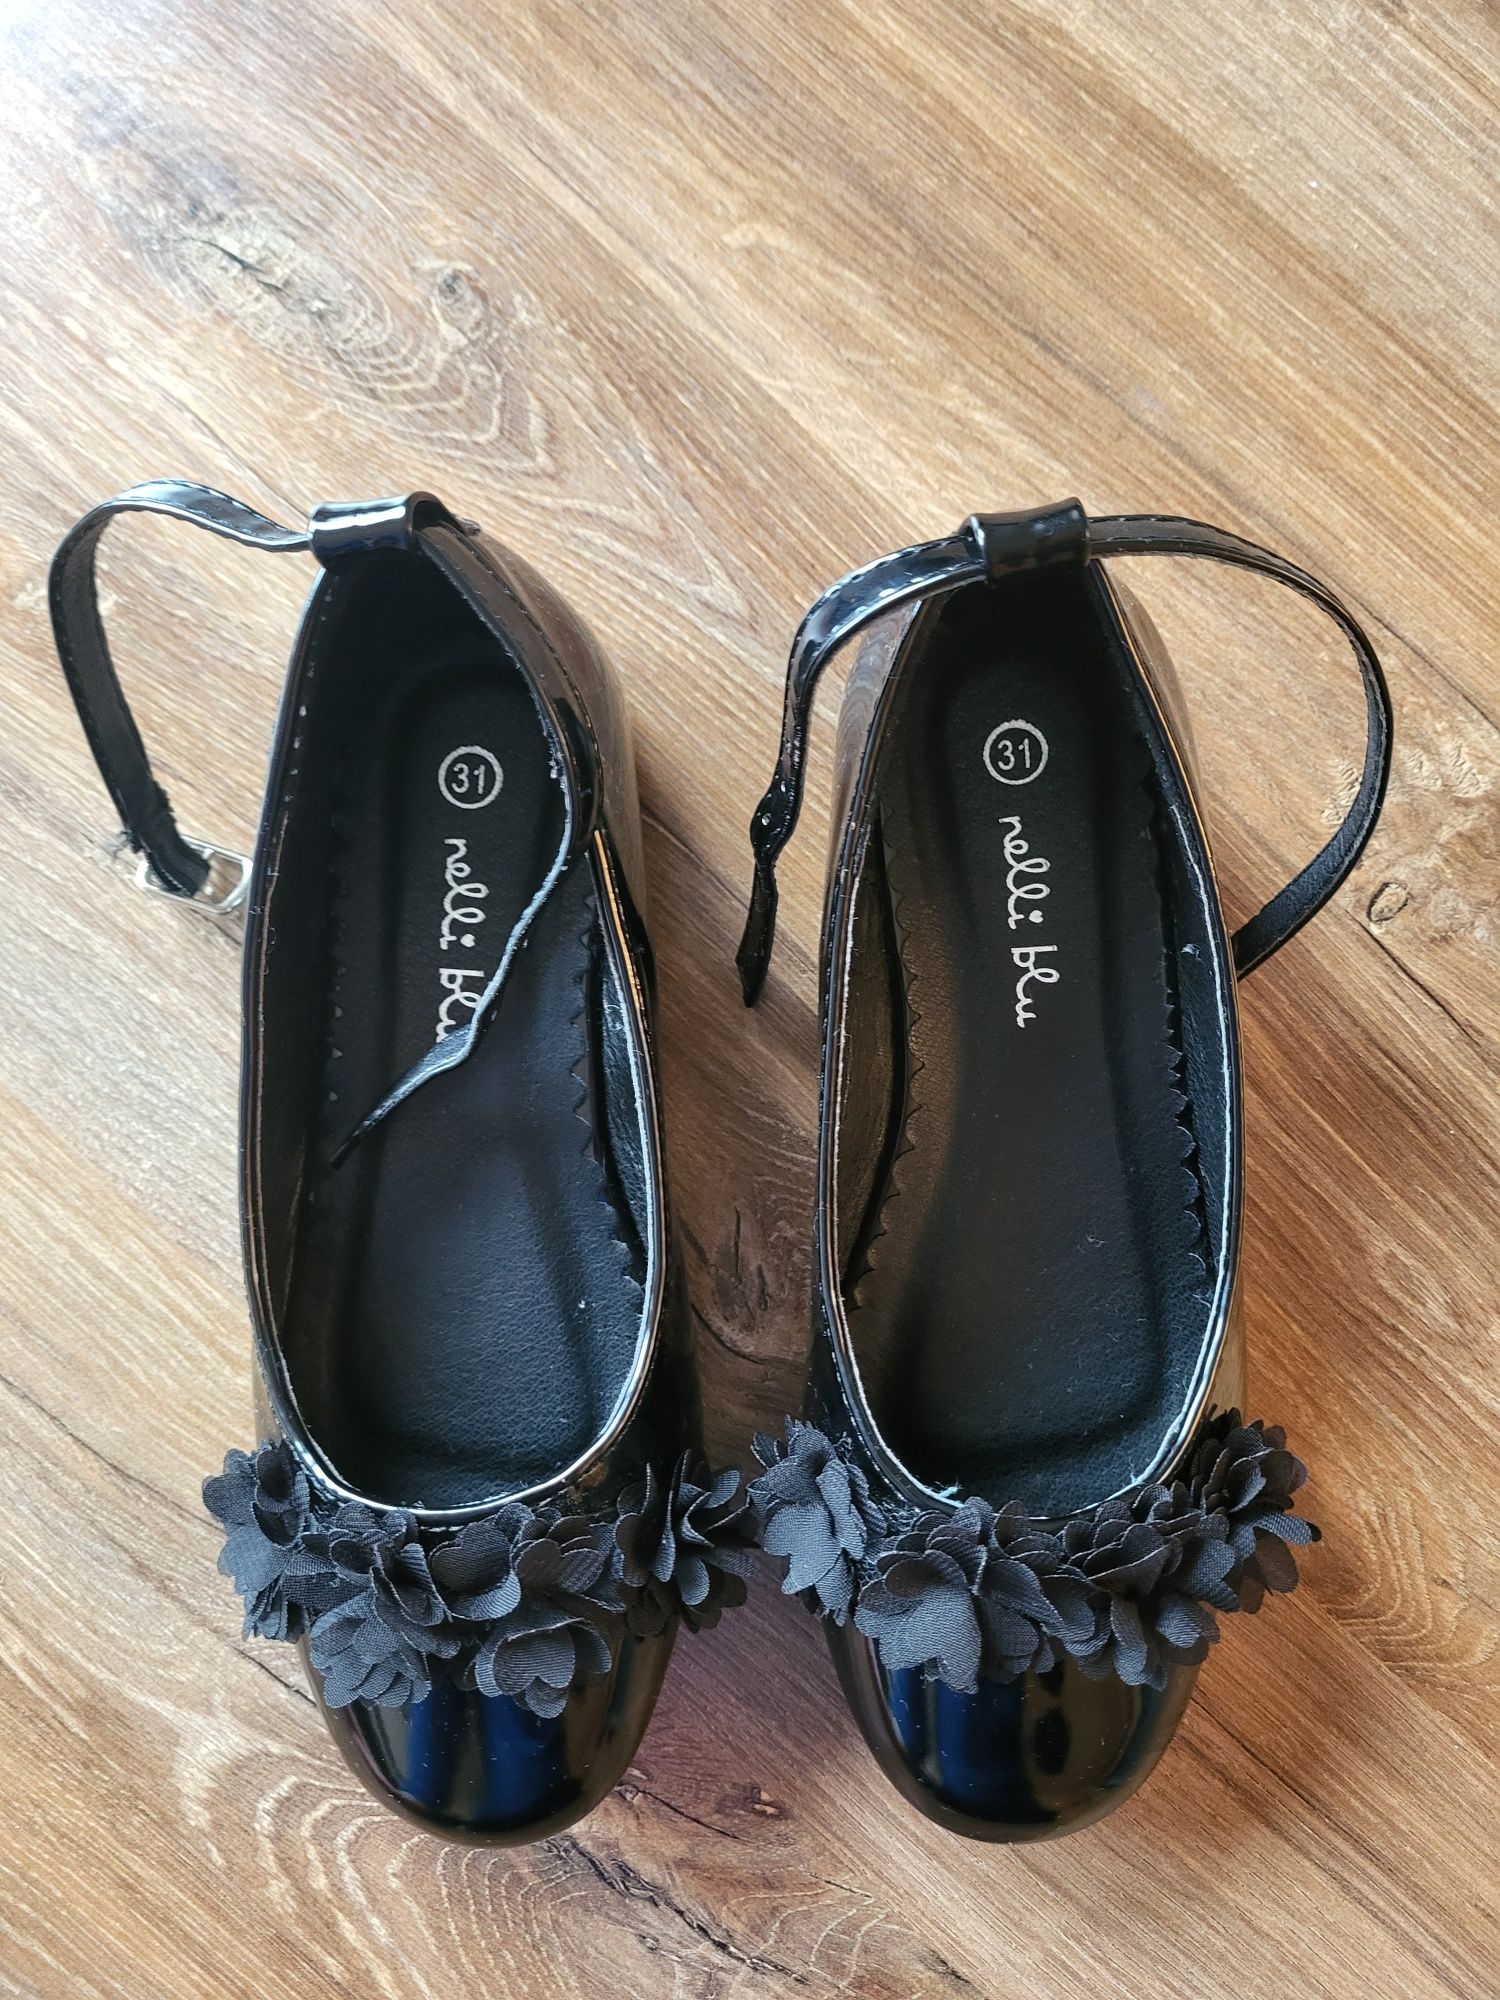 Buty - pantofelki dla dziewczynki 31r.